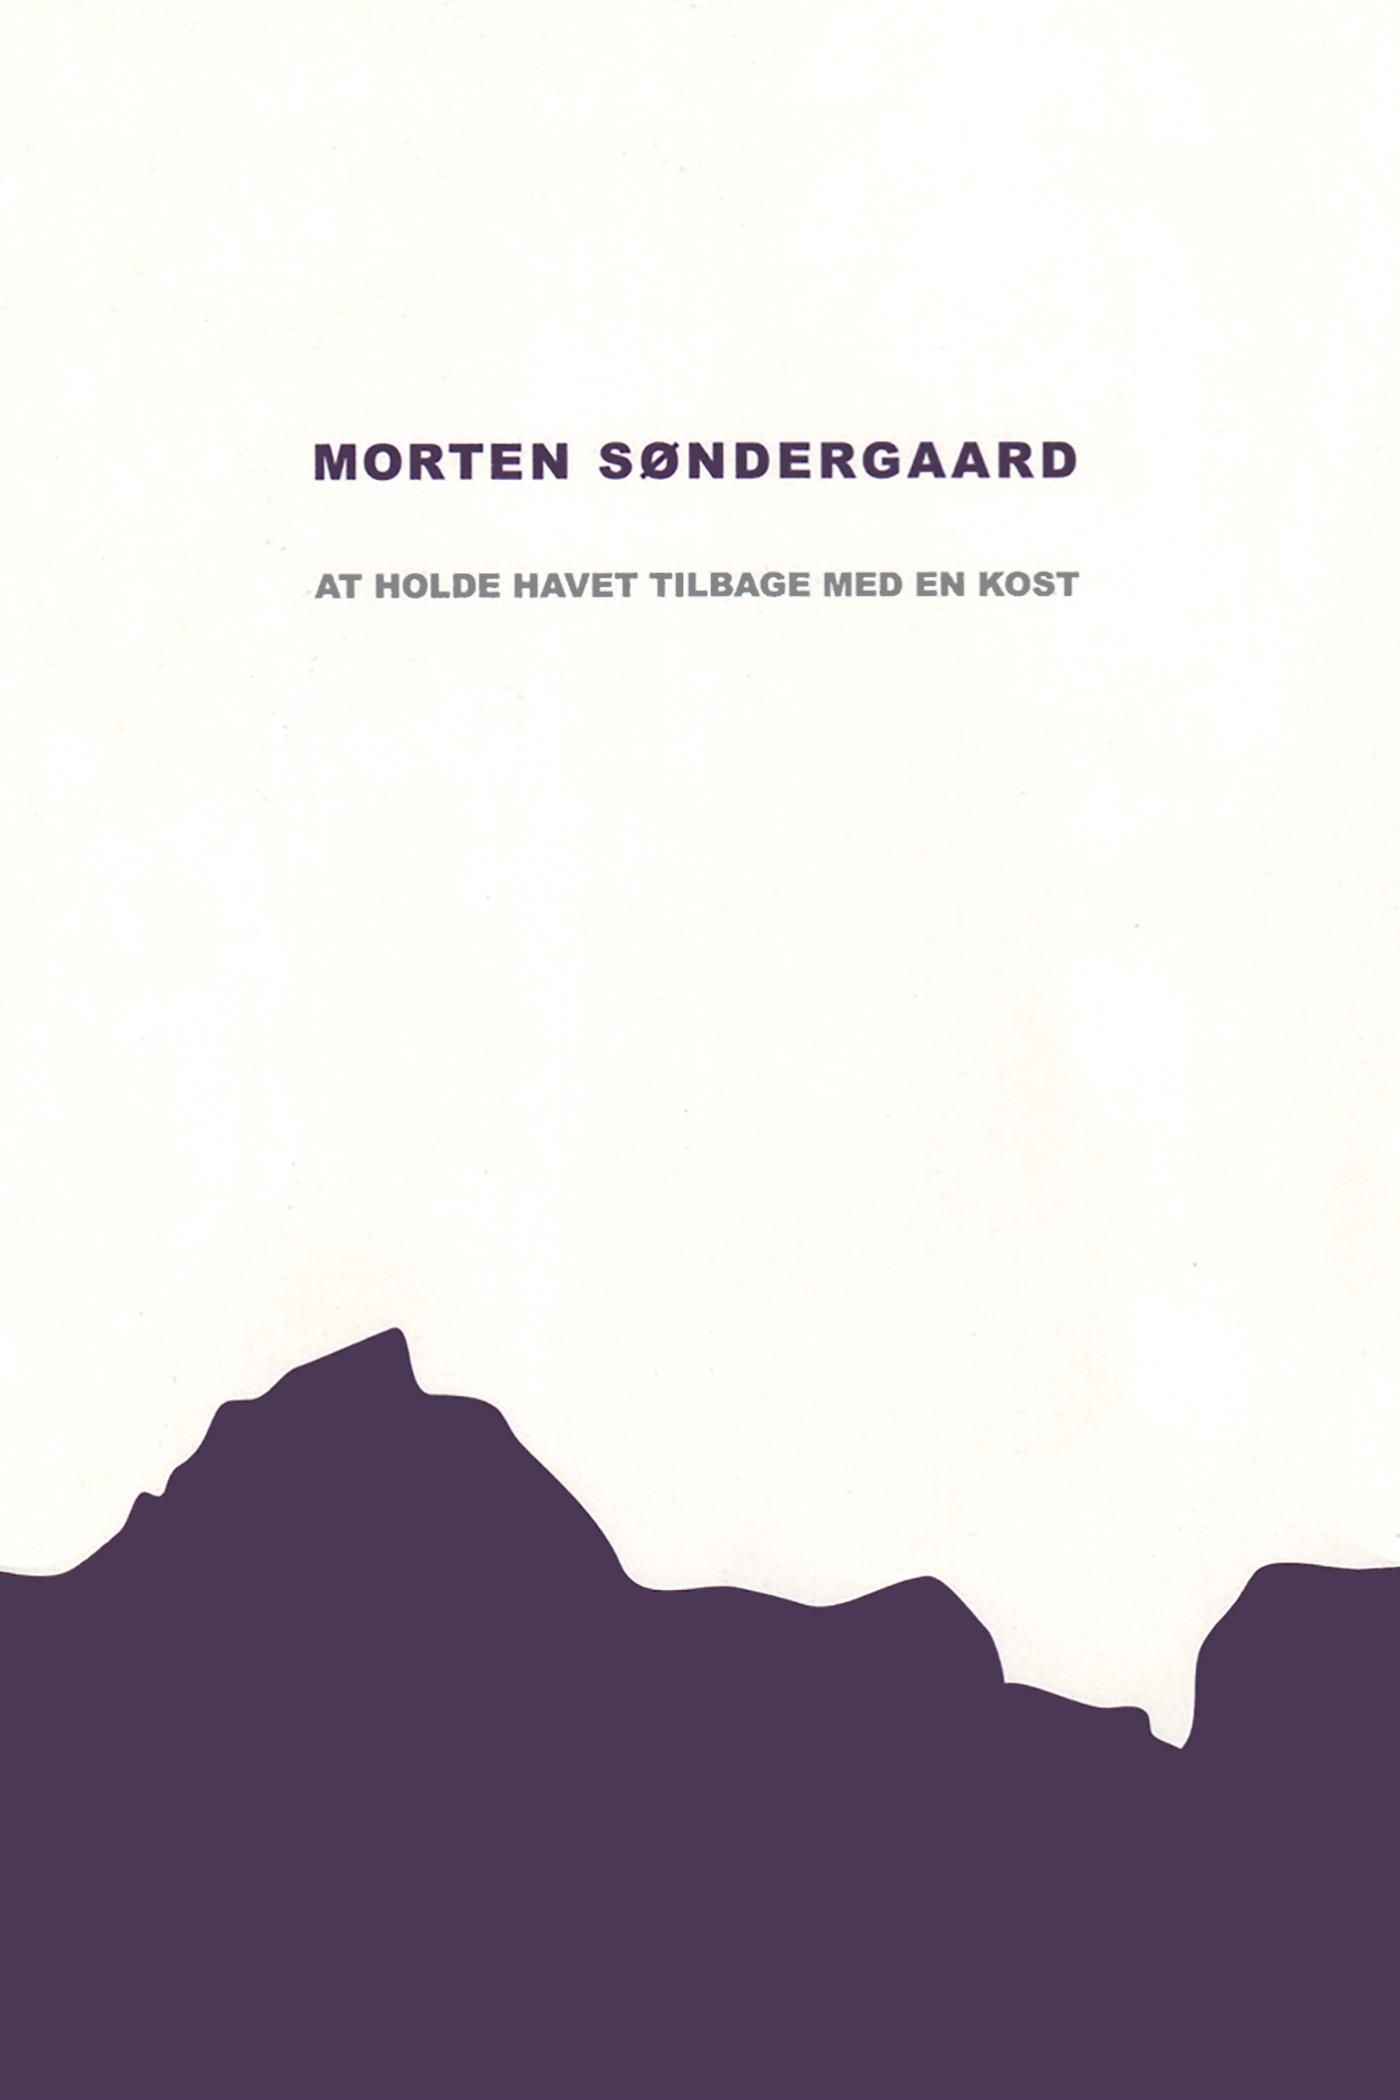 At holde havet tilbage med en kost, eBook by Morten Søndergaard